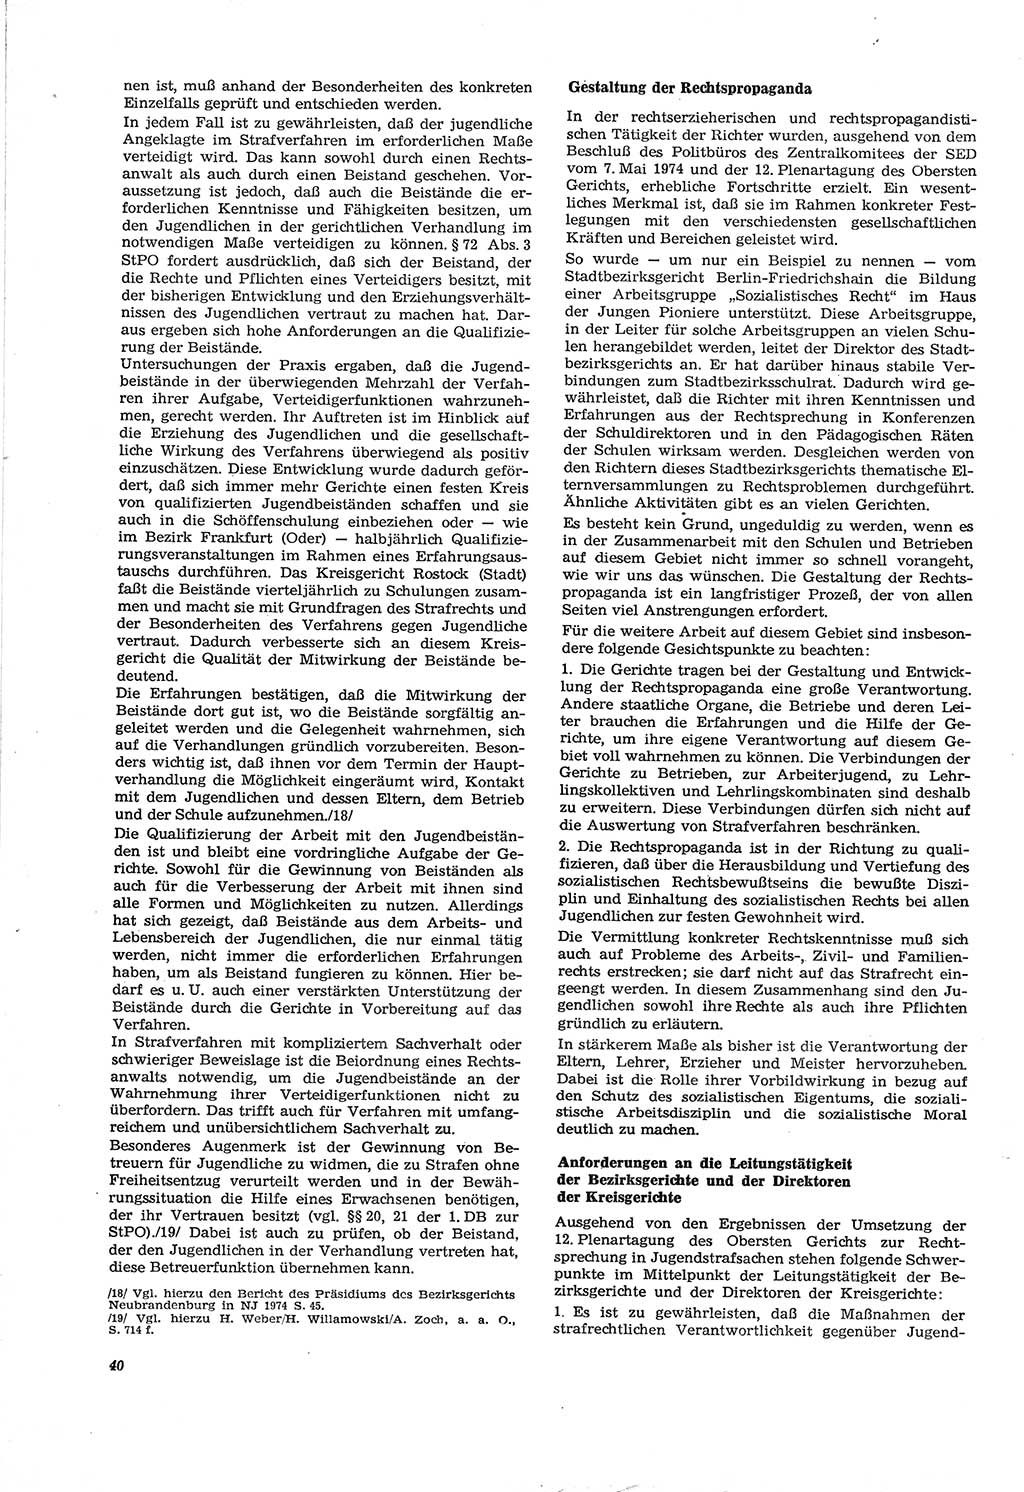 Neue Justiz (NJ), Zeitschrift für Recht und Rechtswissenschaft [Deutsche Demokratische Republik (DDR)], 30. Jahrgang 1976, Seite 40 (NJ DDR 1976, S. 40)